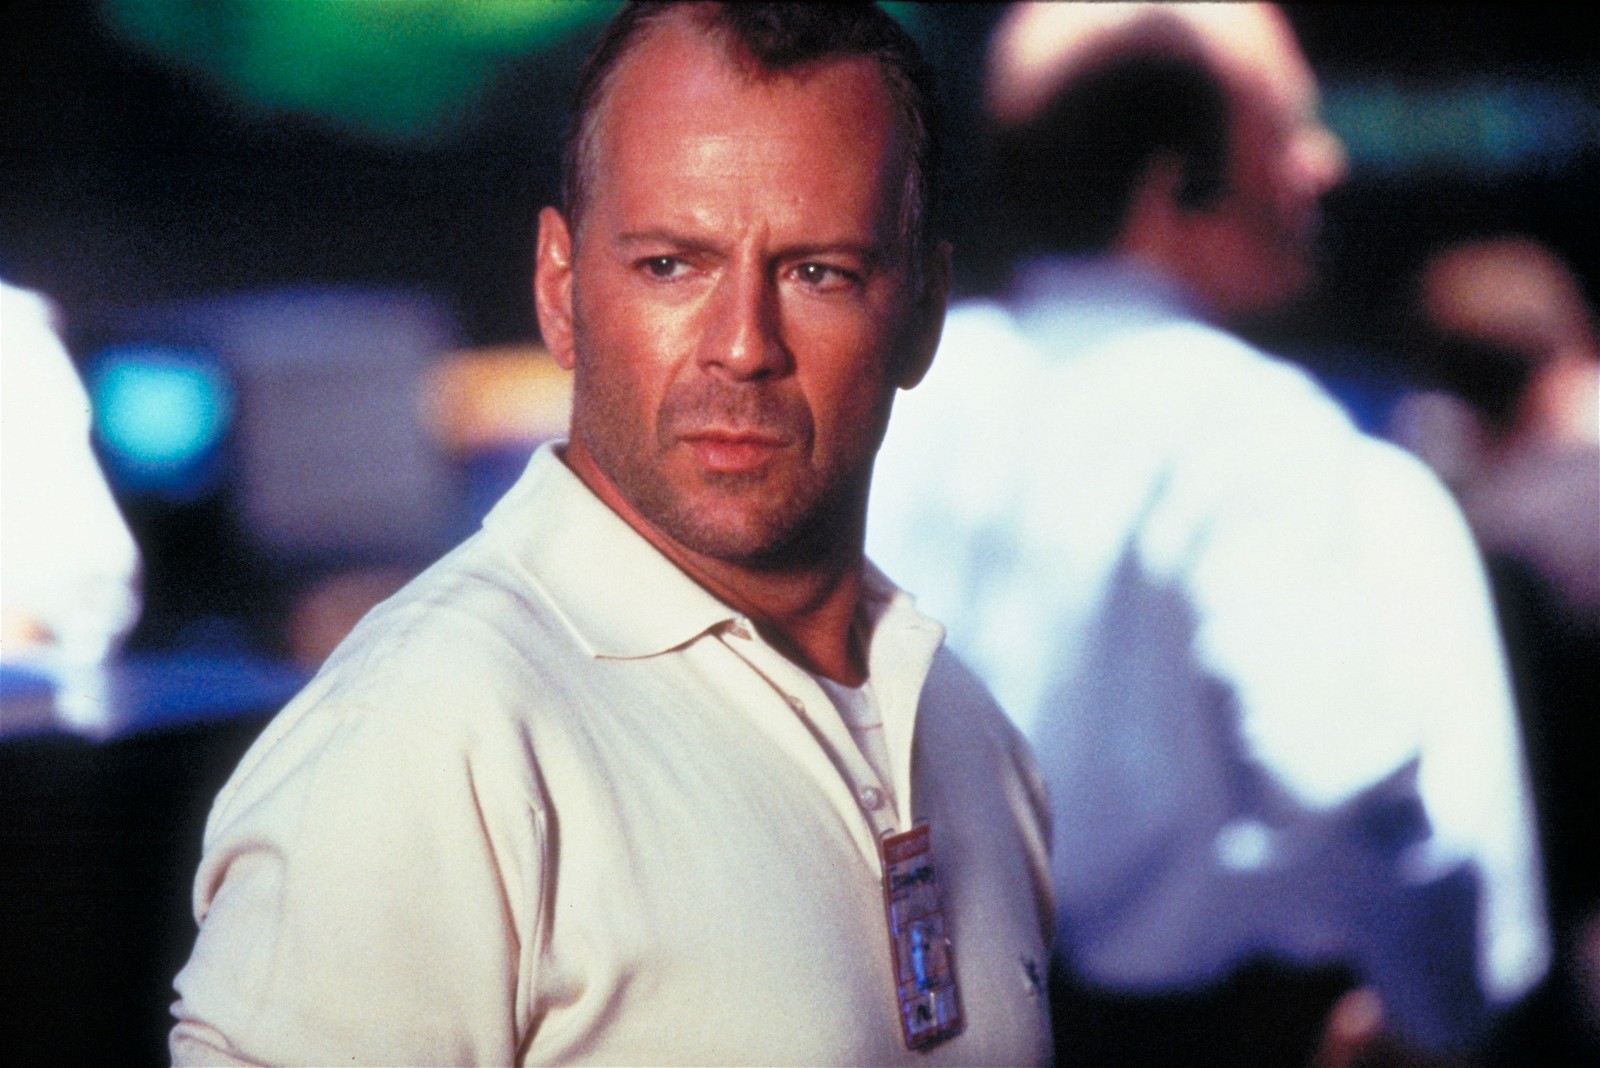 Bruce Willis in a still from Armageddon 